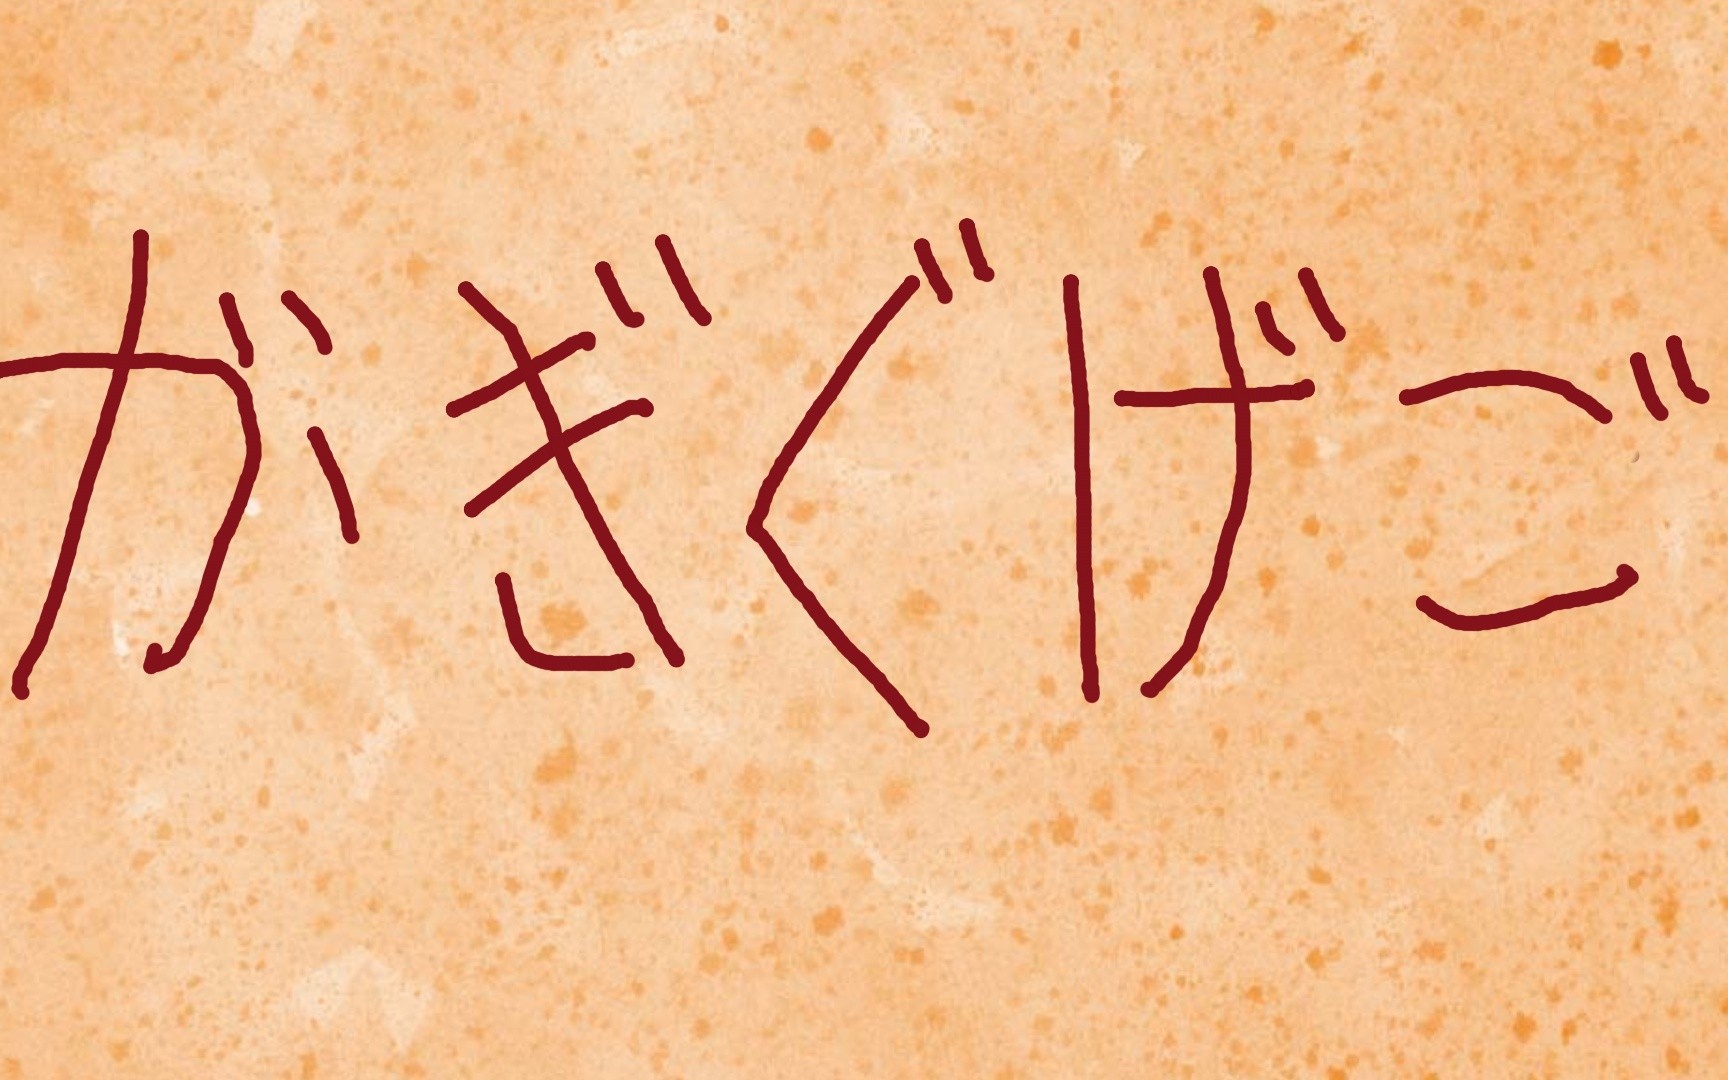 【日语五十音】手把手教你认识和书写假名 第六期